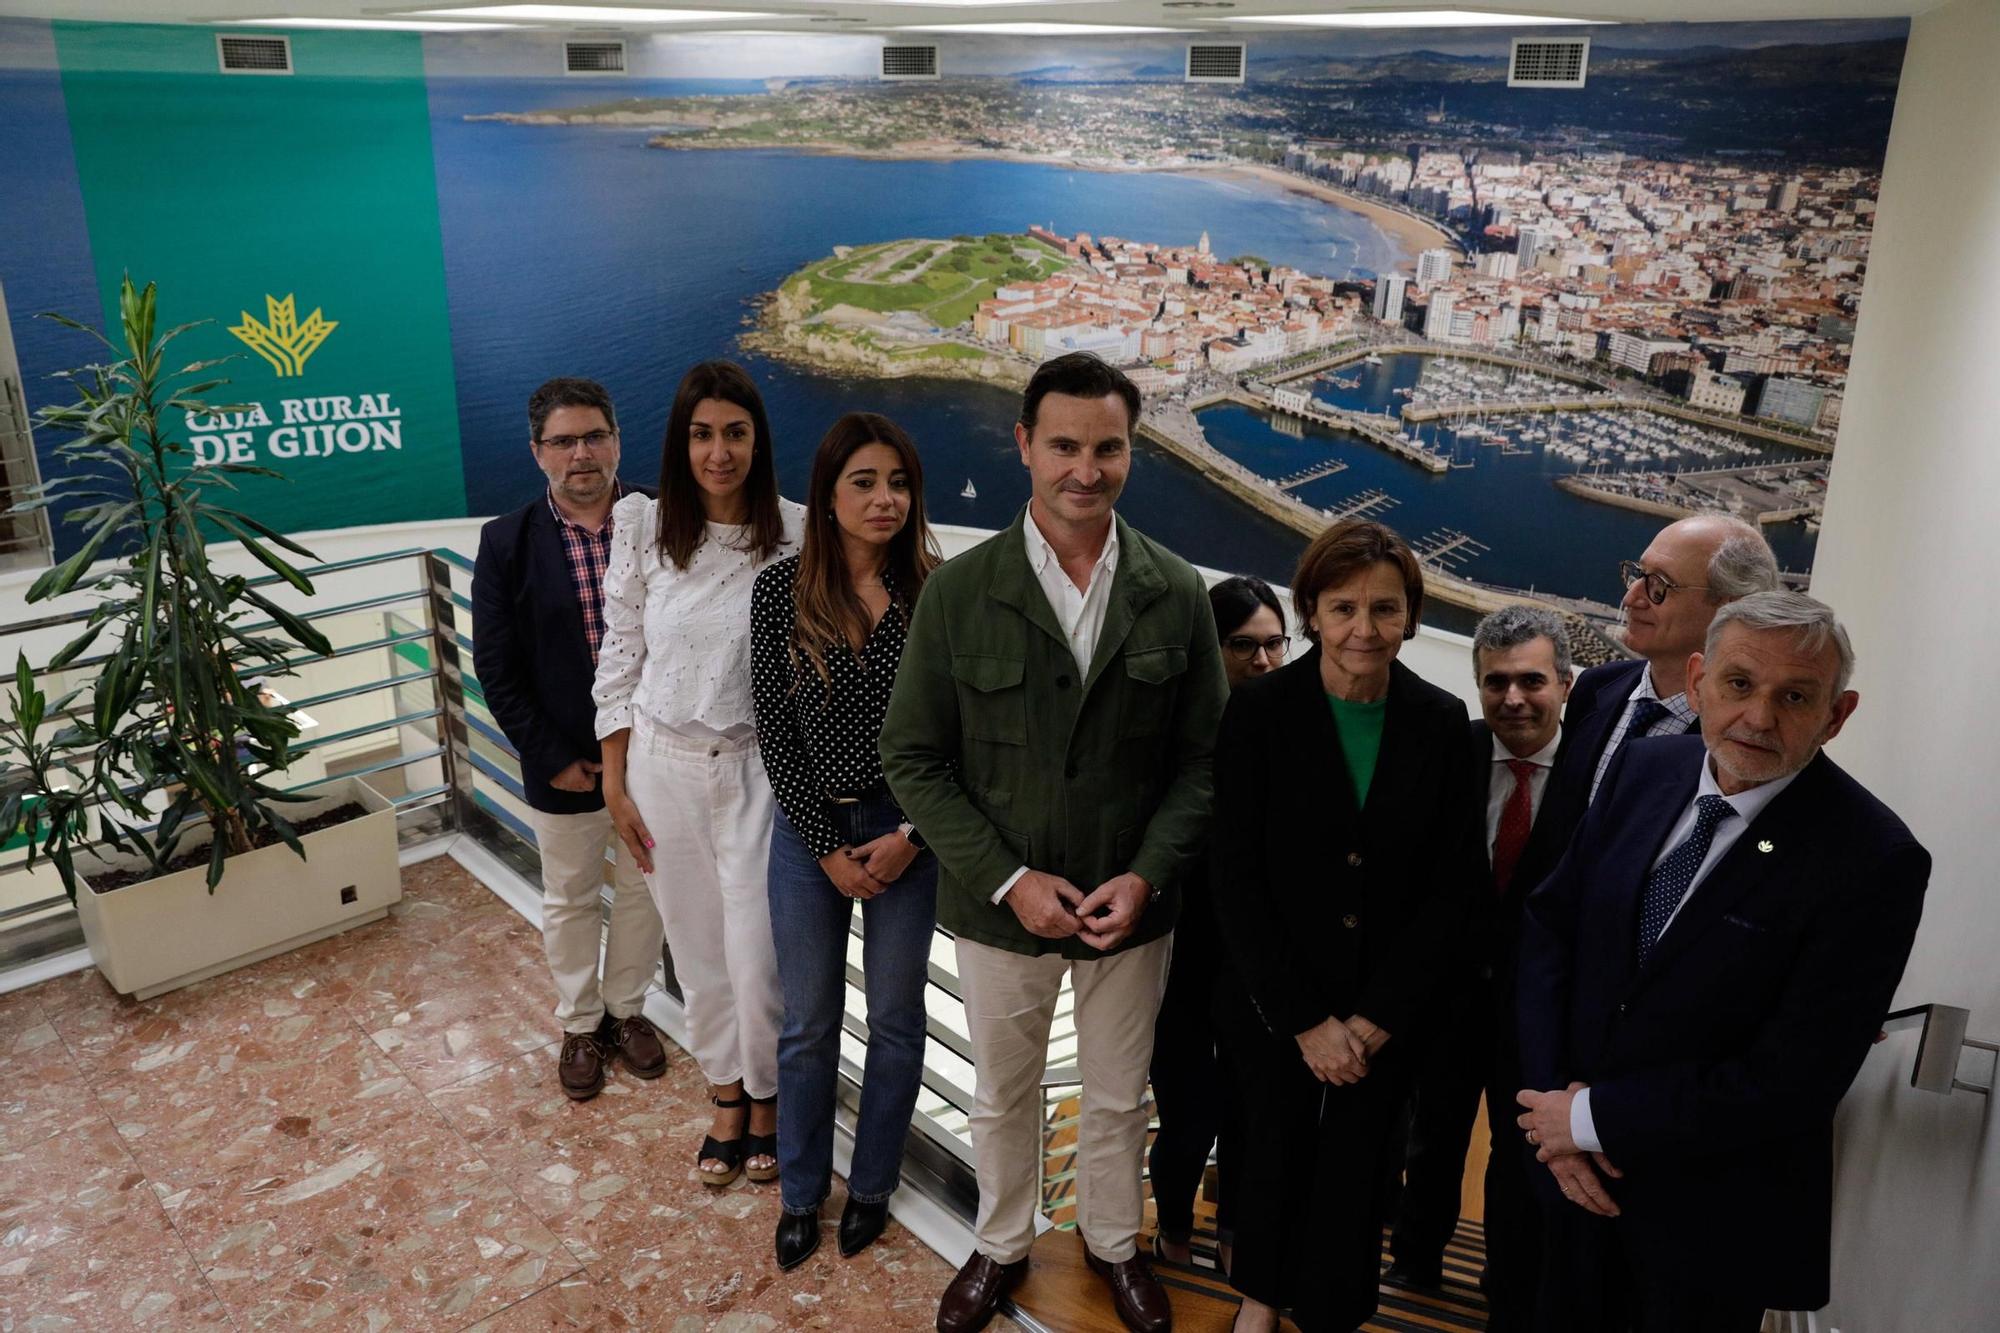 Caja Rural de Gijón renueva su imagen tras el año de más beneficios (en imágenes)